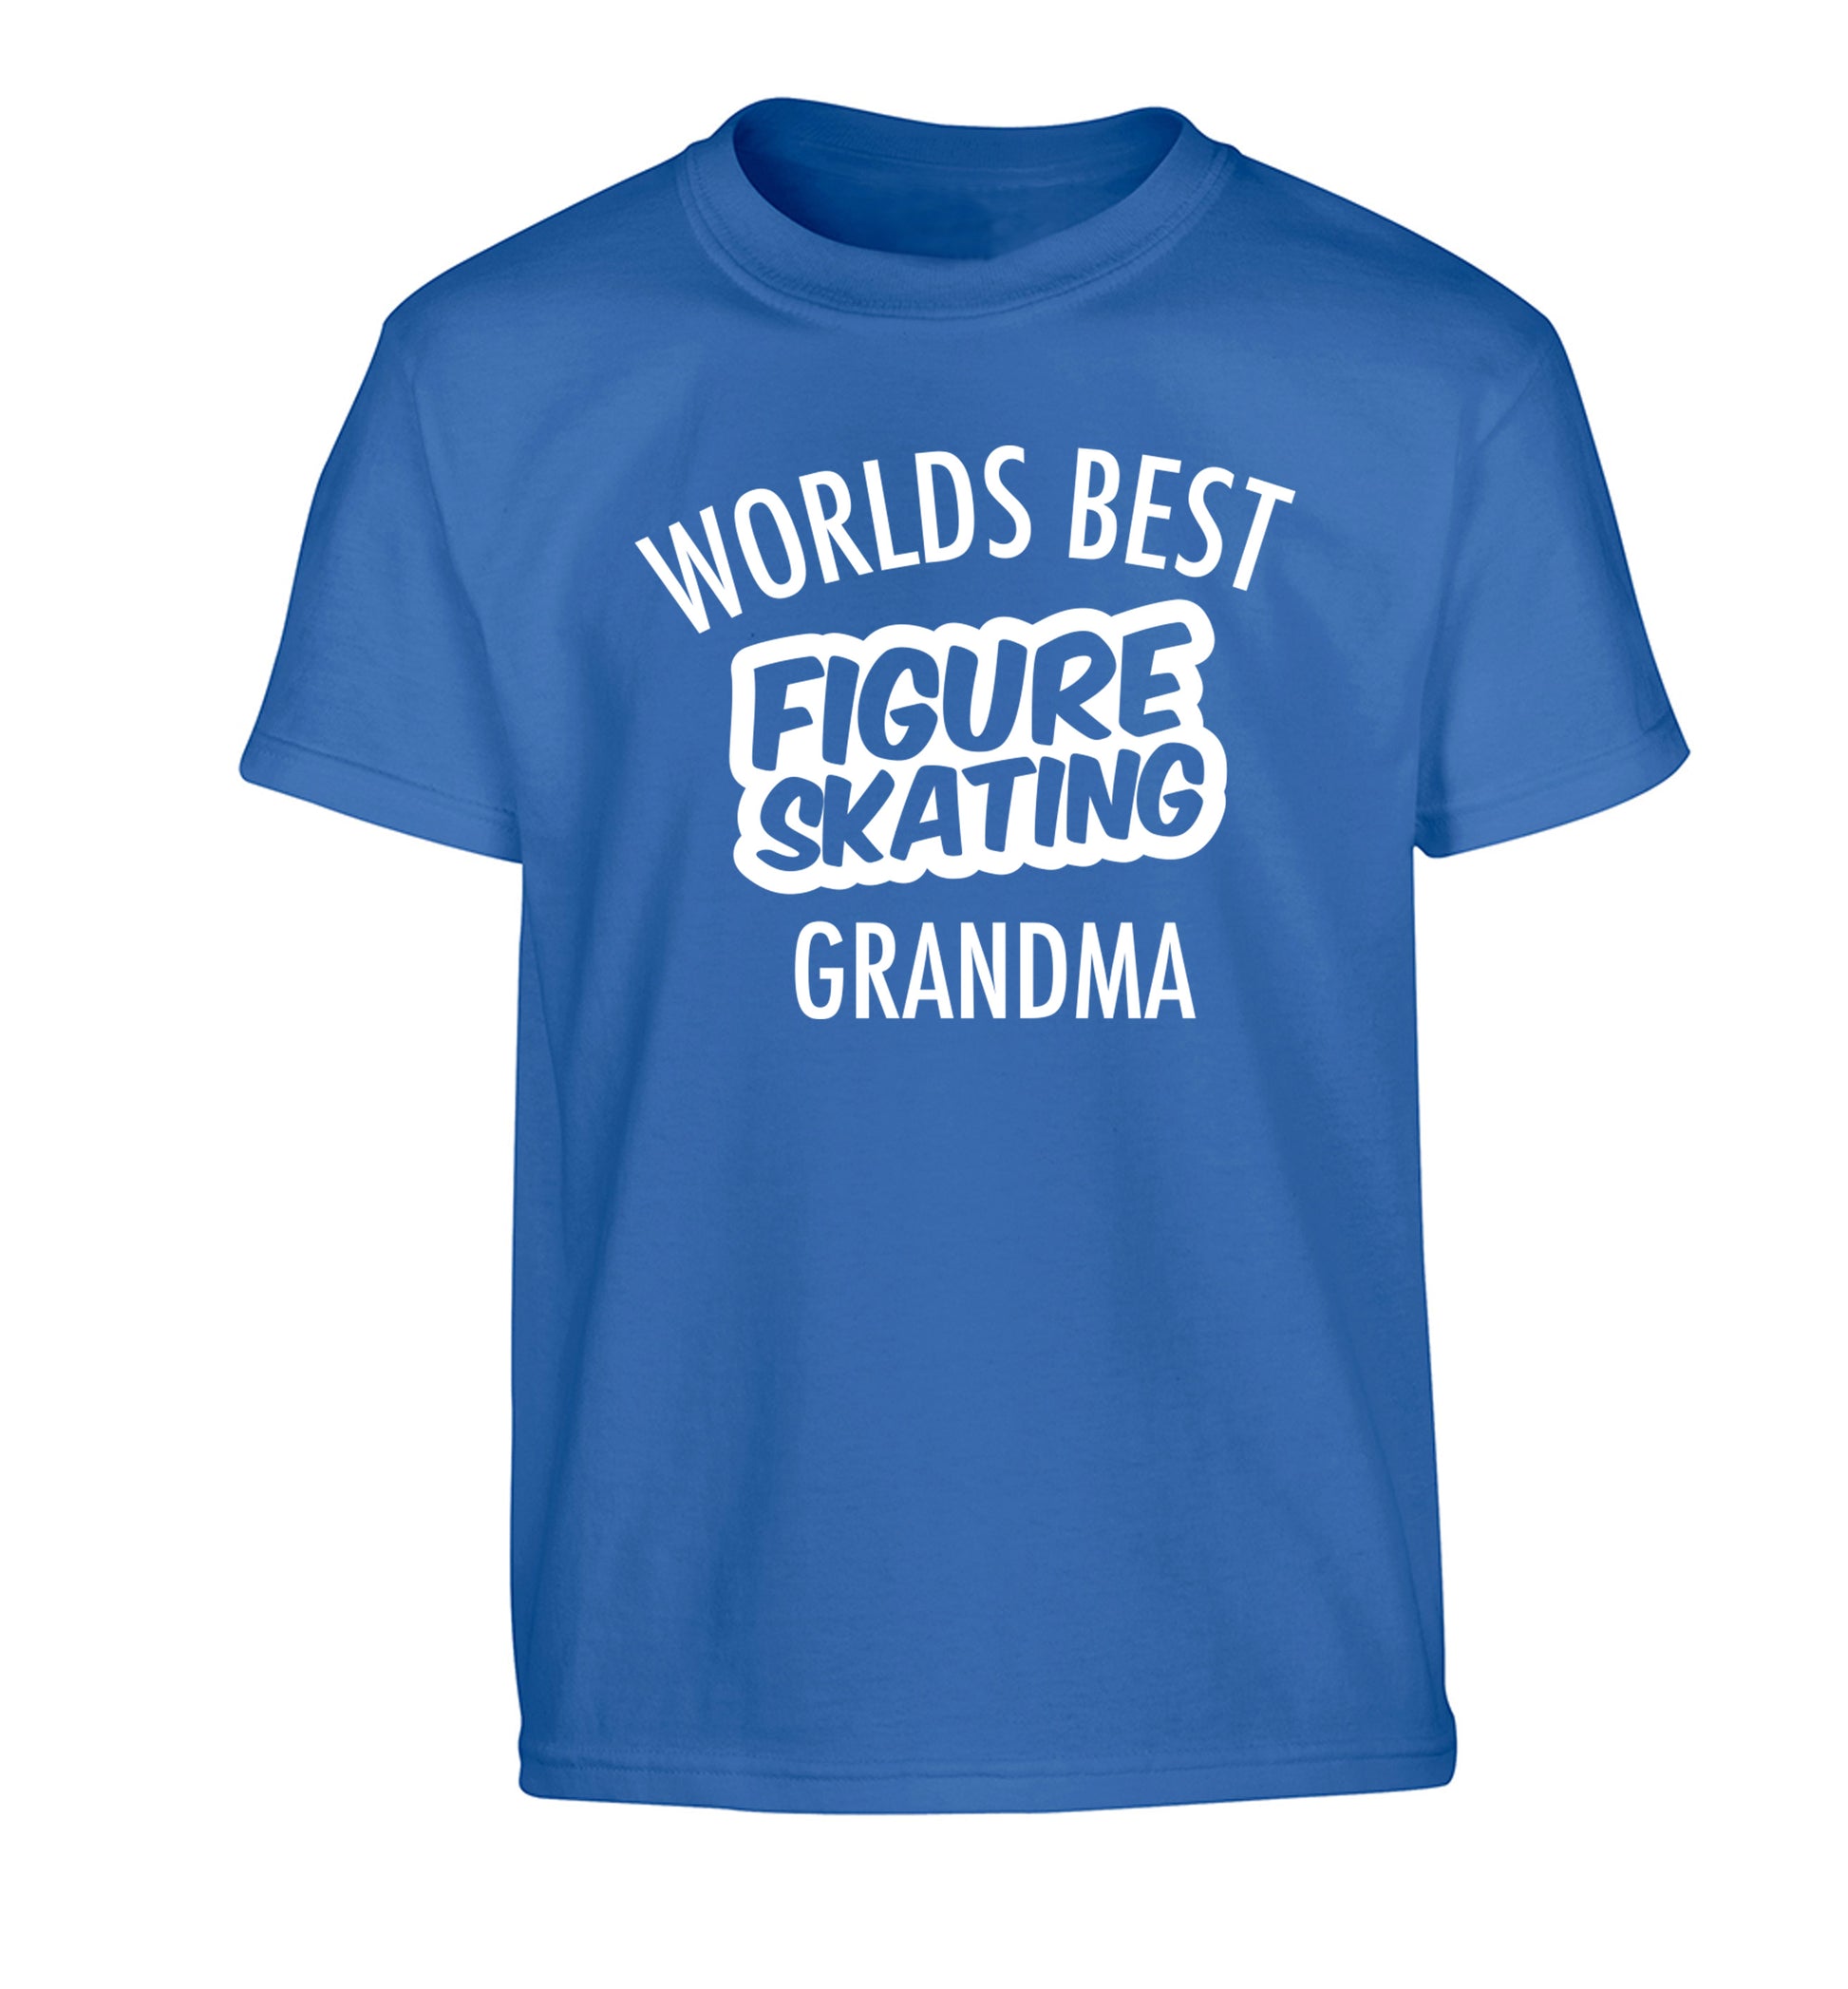 Worlds best figure skating grandma Children's blue Tshirt 12-14 Years